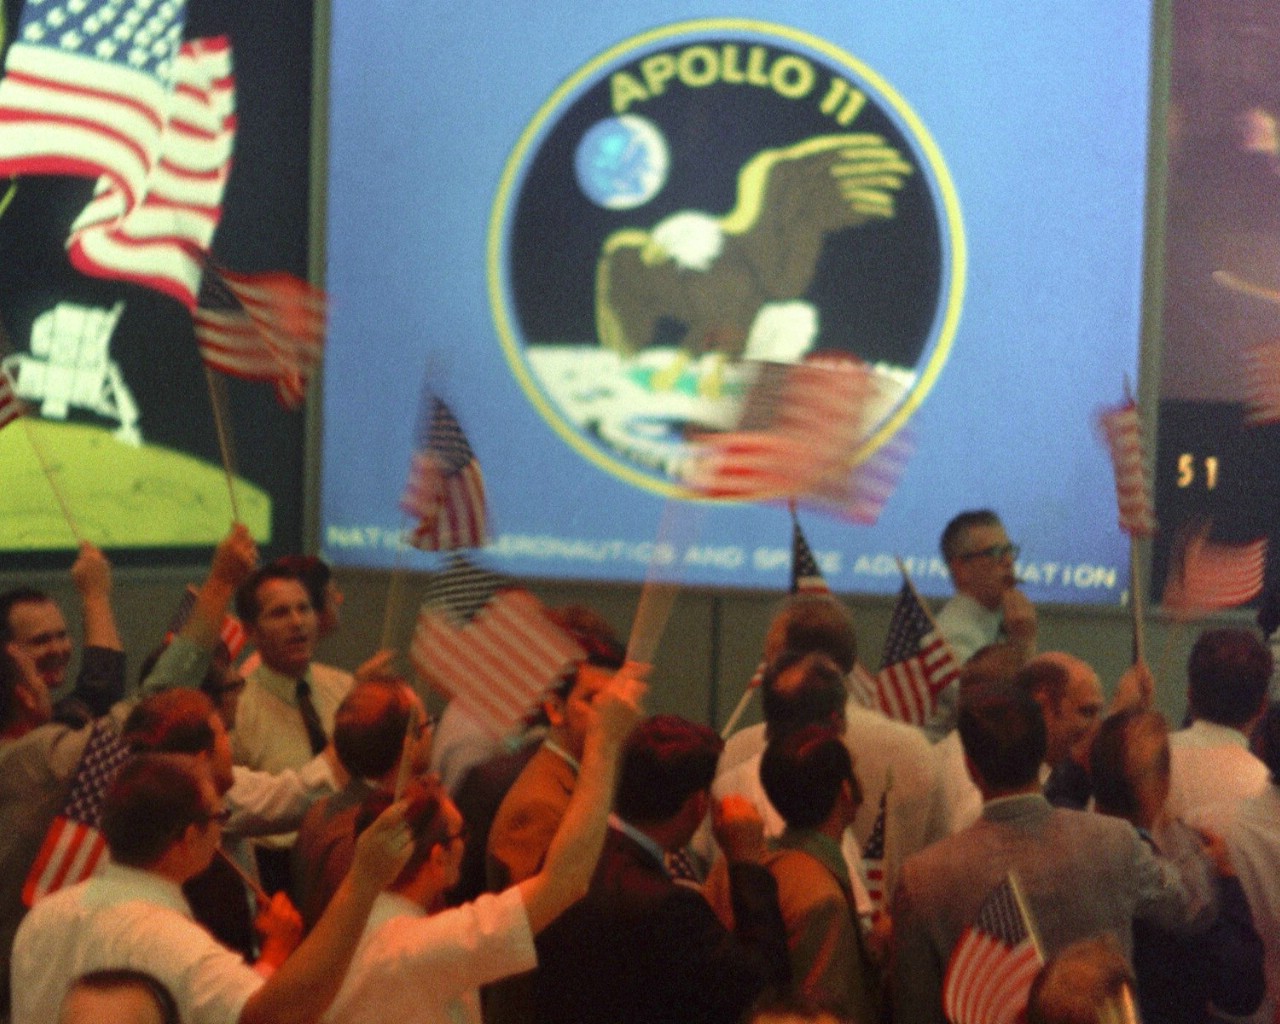 壁纸1280x1024One Giant Leap for Mankind  Splashdown Celebration 成功溅落后的庆祝壁纸 阿波罗11号登月40周年纪念壁纸壁纸 阿波罗11号登月40周年纪念壁纸图片 阿波罗11号登月40周年纪念壁纸素材 人文壁纸 人文图库 人文图片素材桌面壁纸